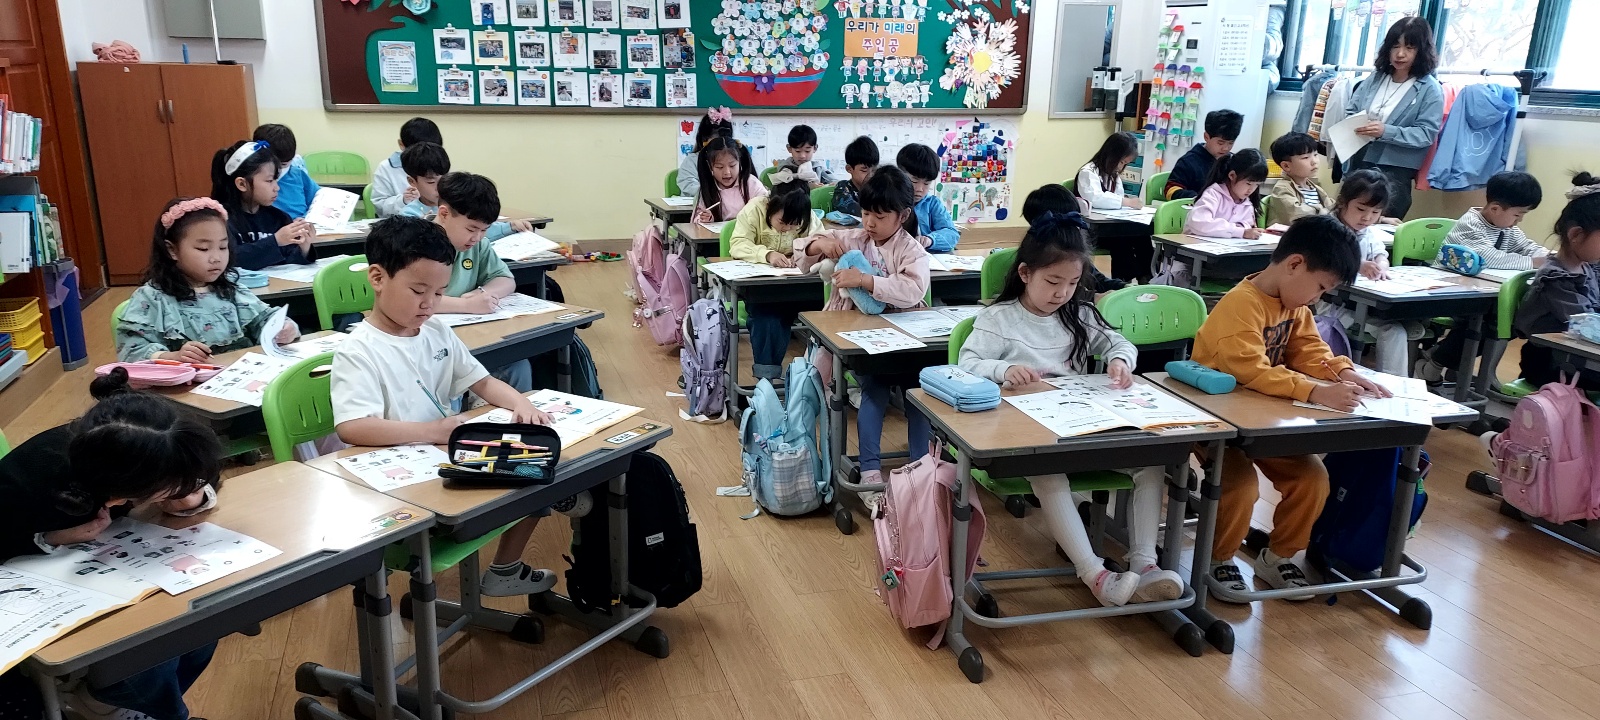 오산원당초등학교 이미지